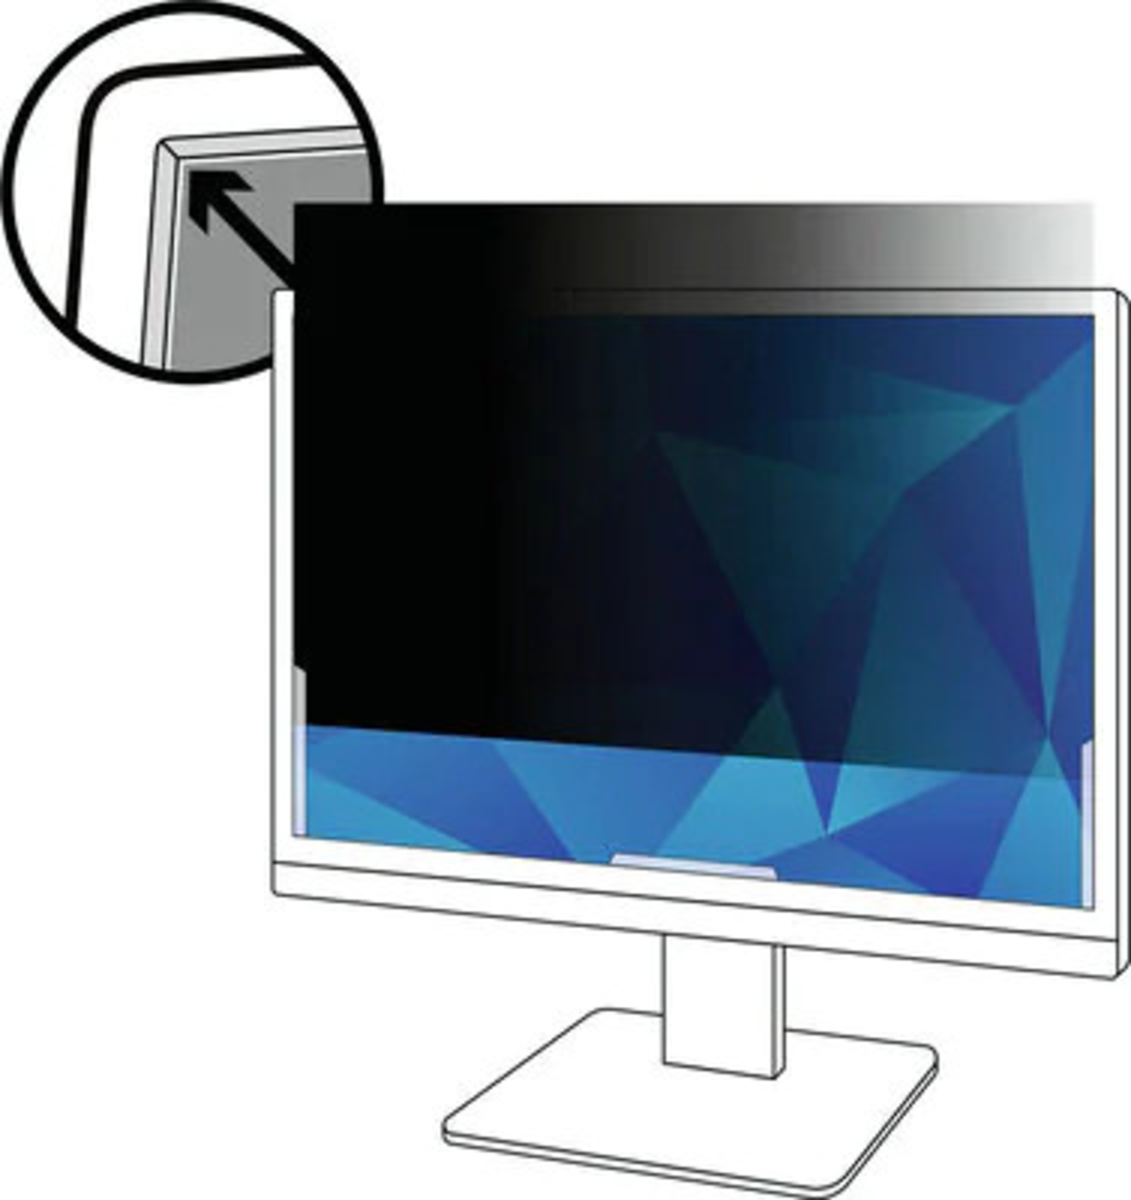 Защитный экран на монитор компьютера. 3m экран защиты информации. Экран конфиденциальности. Защитный экран для монитора